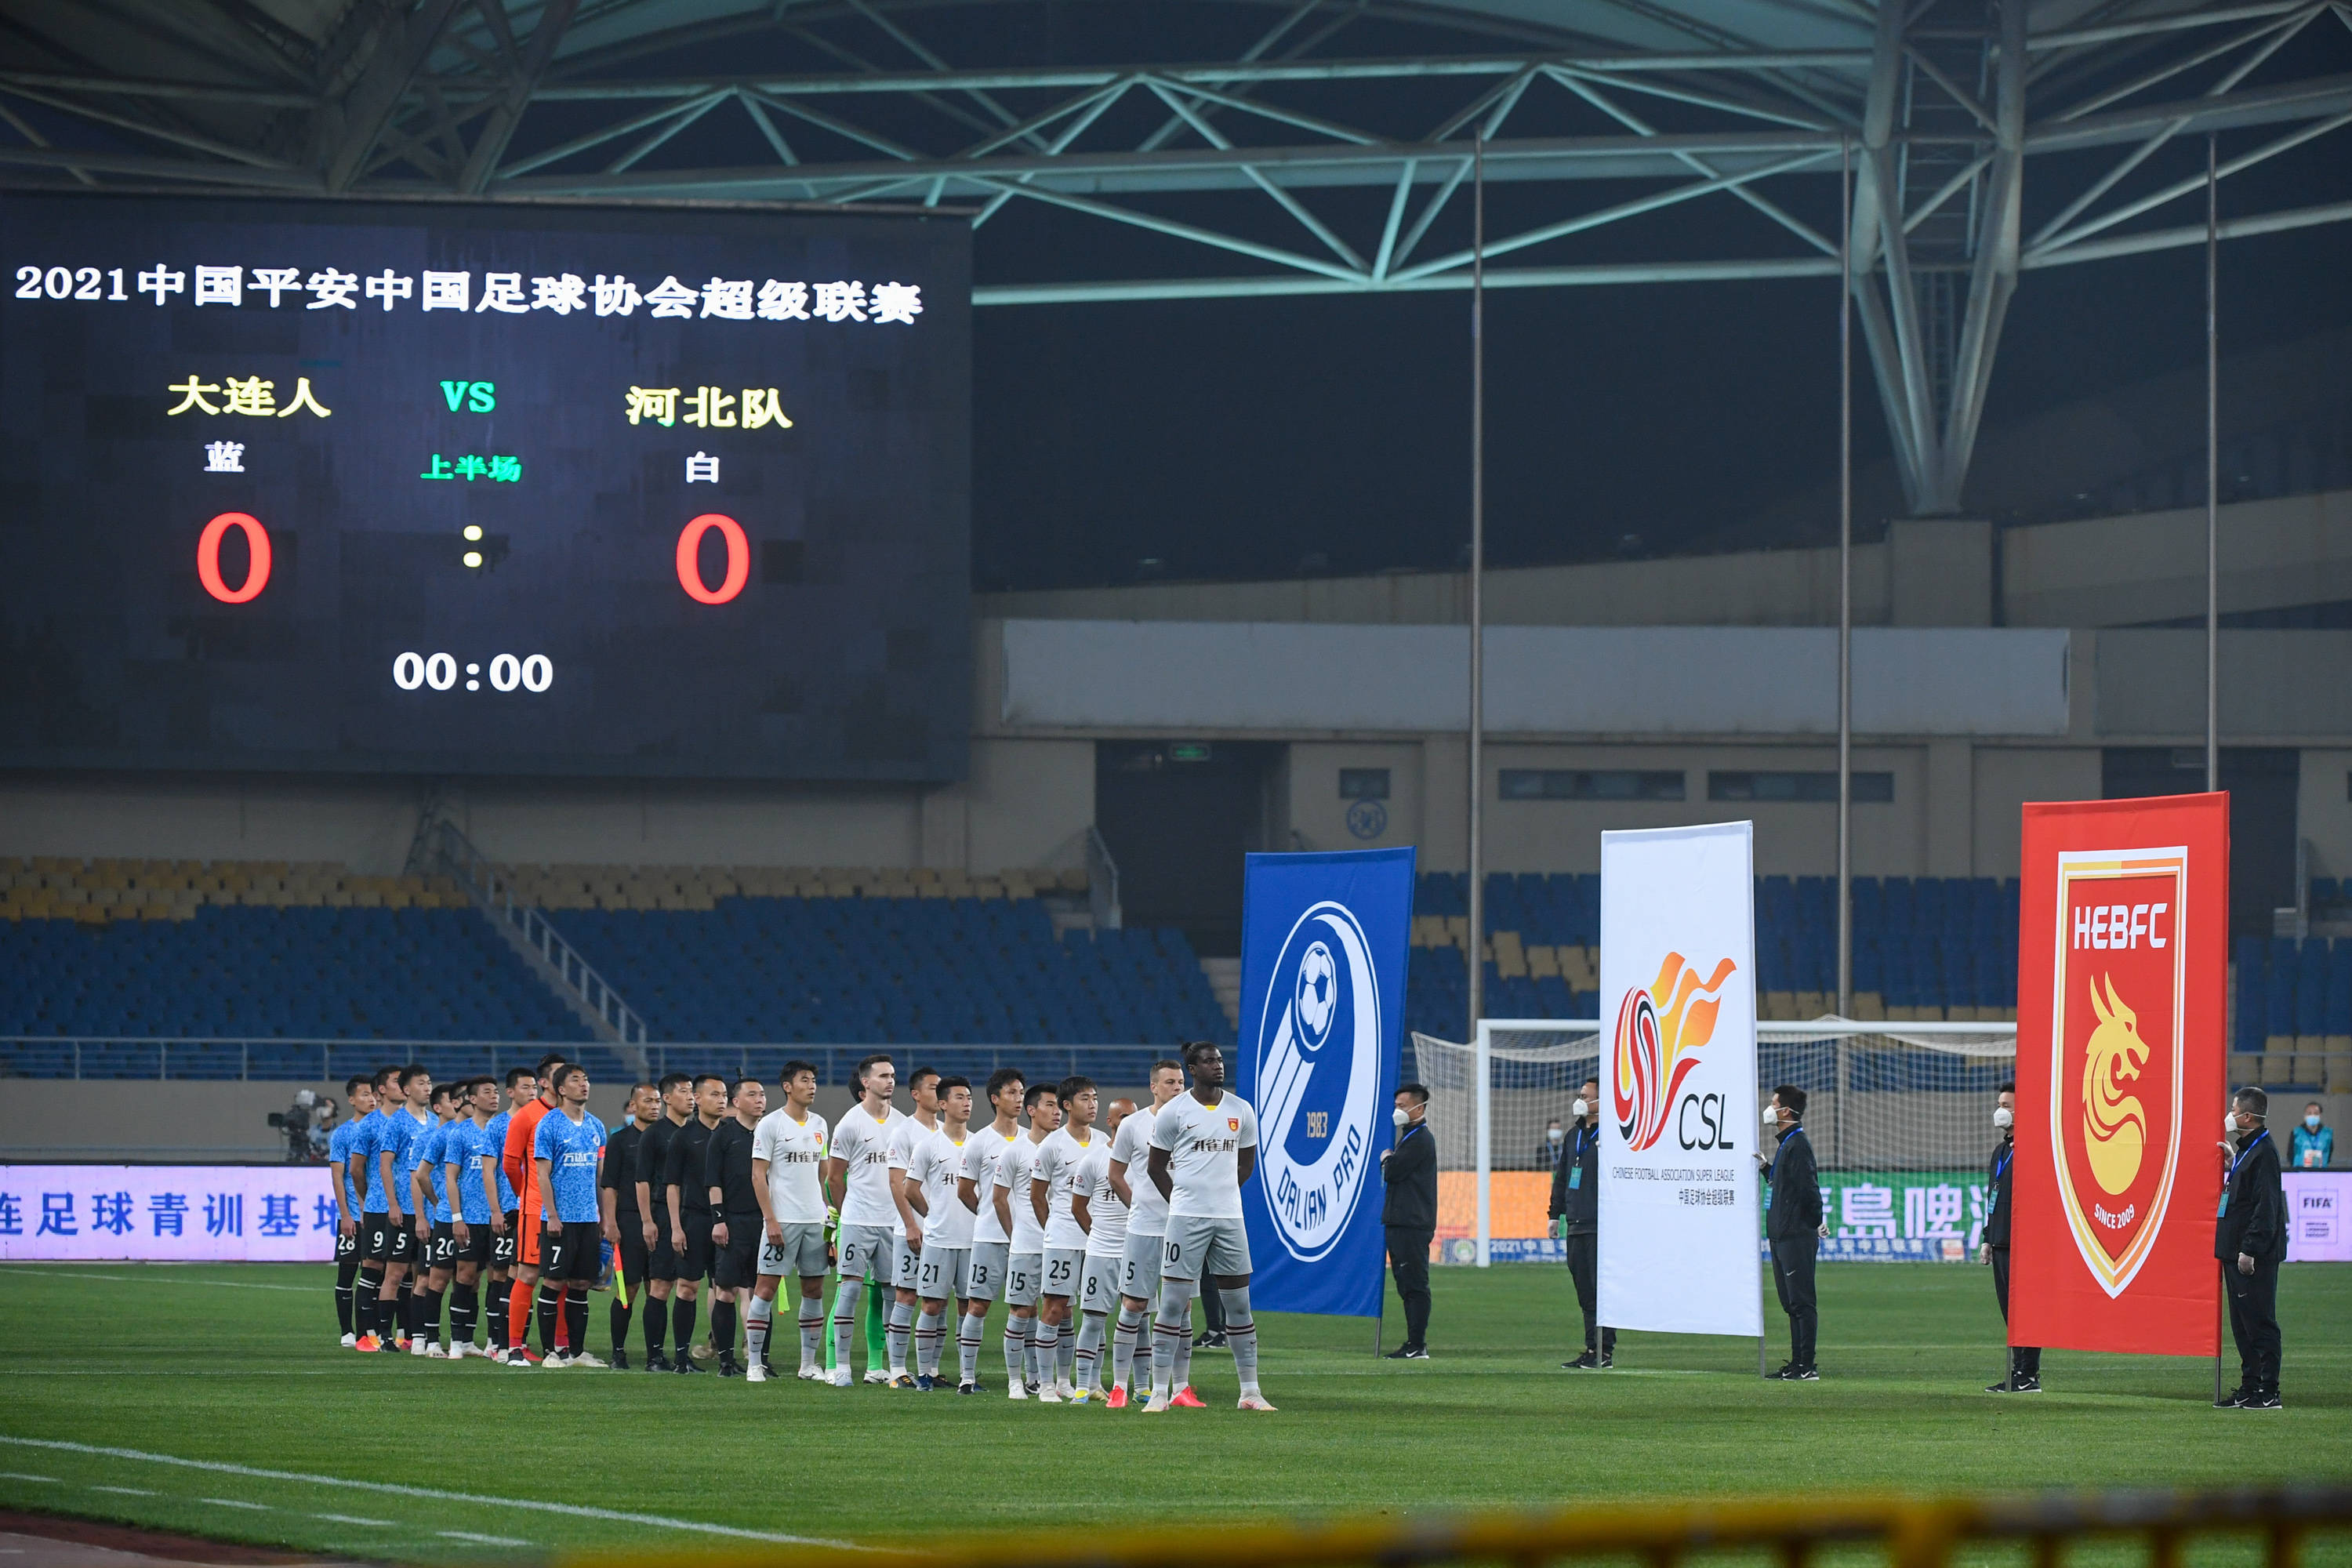 当日,在2021赛季中国足球协会超级联赛(苏州赛区)第二轮比赛中,大连